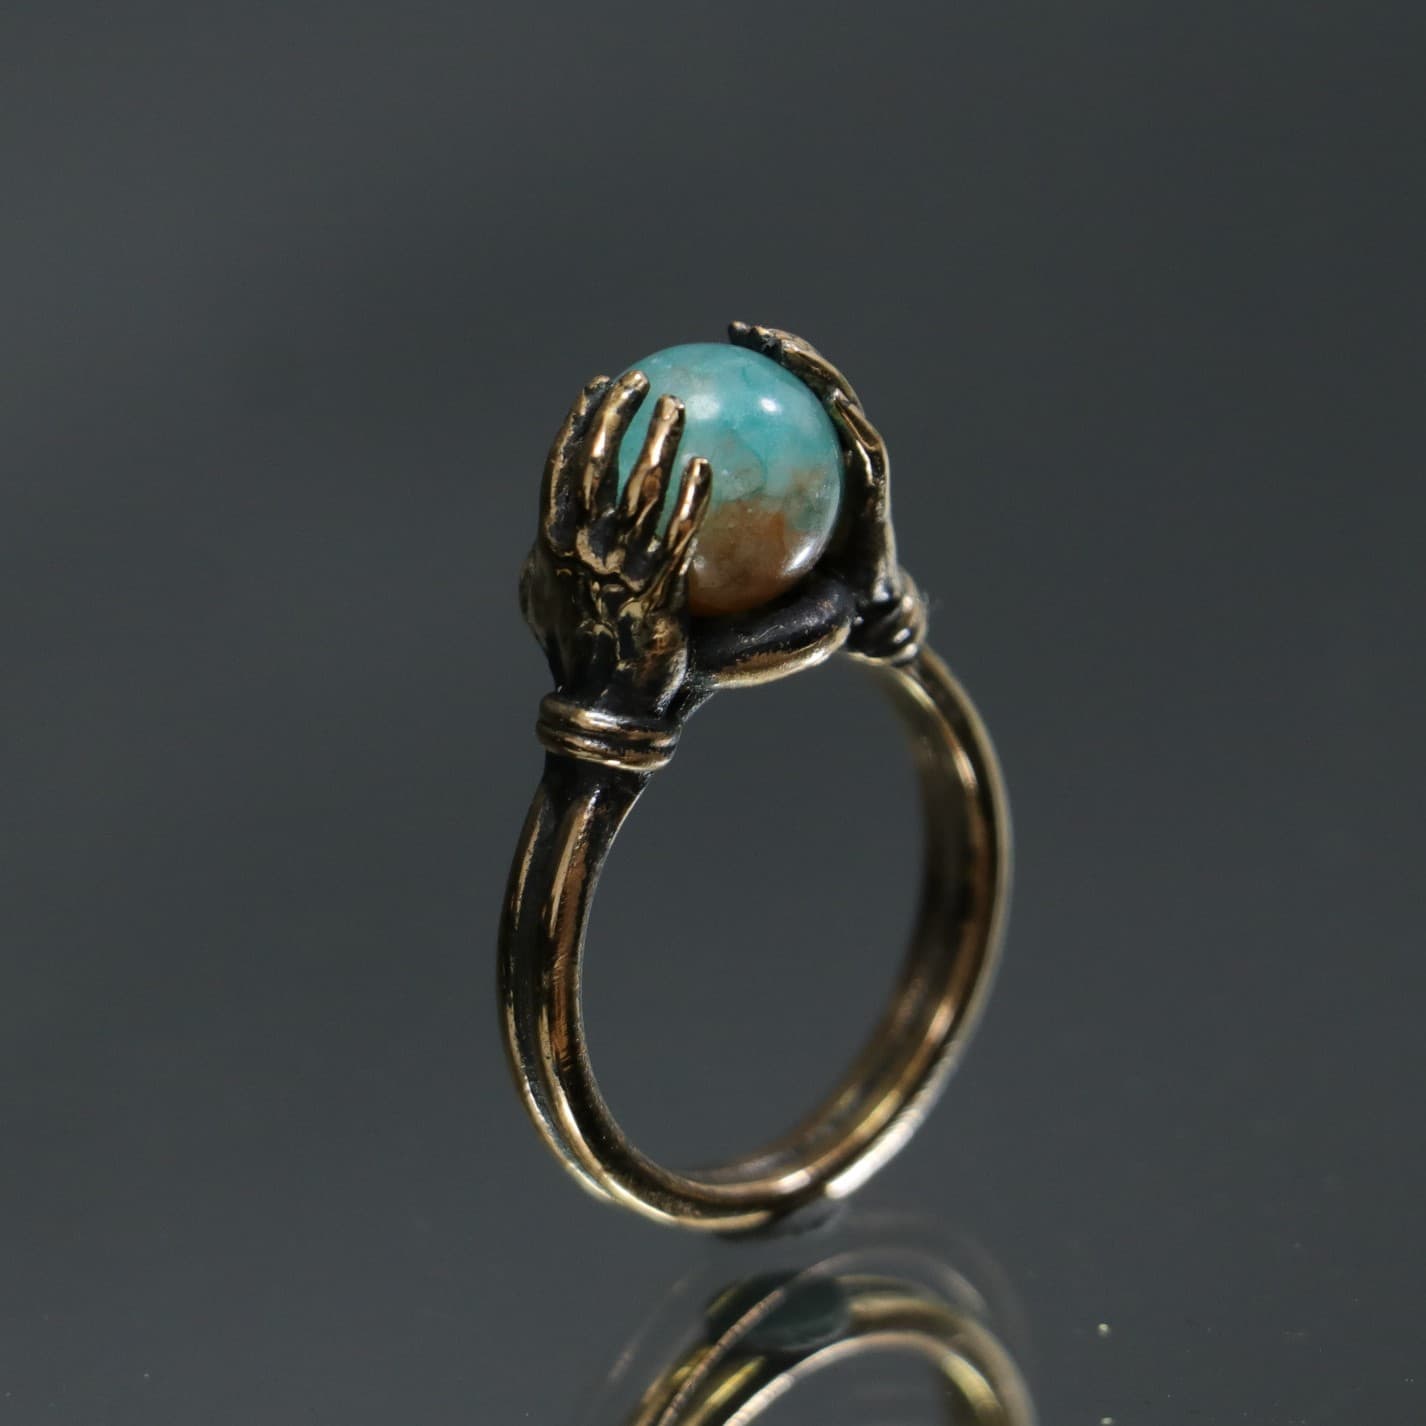 Jade Stone Ring Between Hands